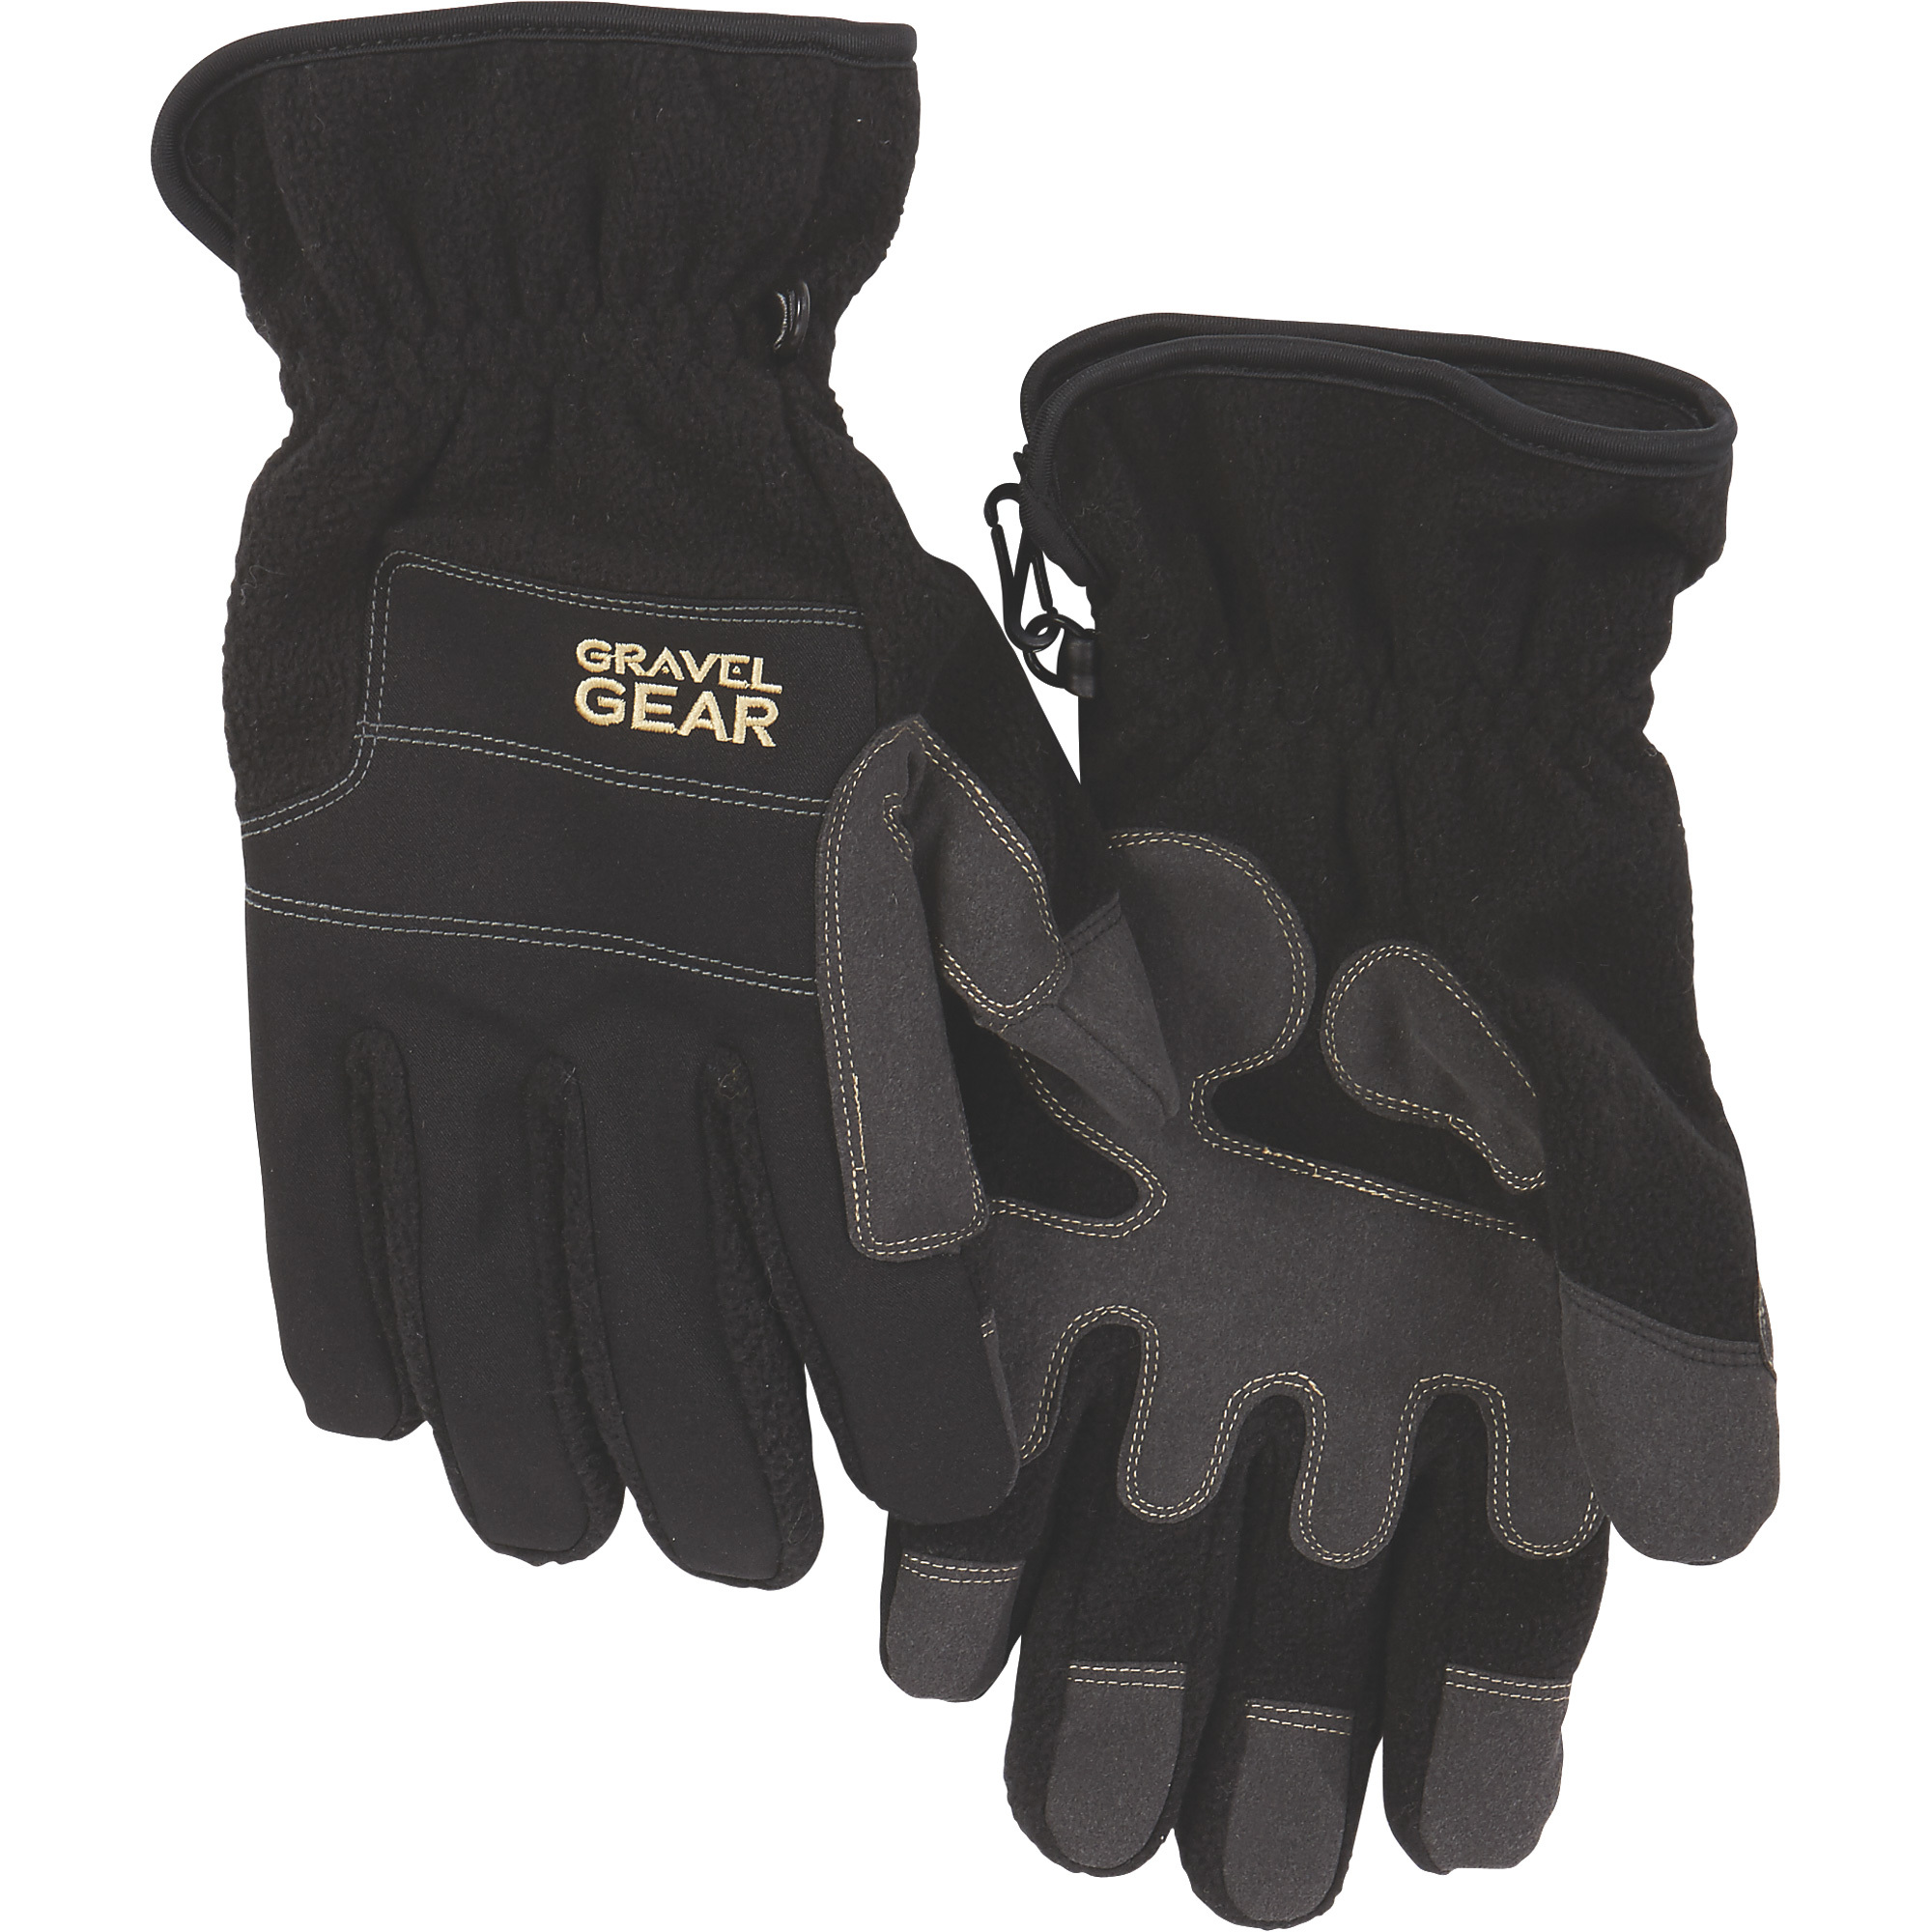 Gravel Gear Men's Tech Fleece Gloves with Thinsulate â Black, Large